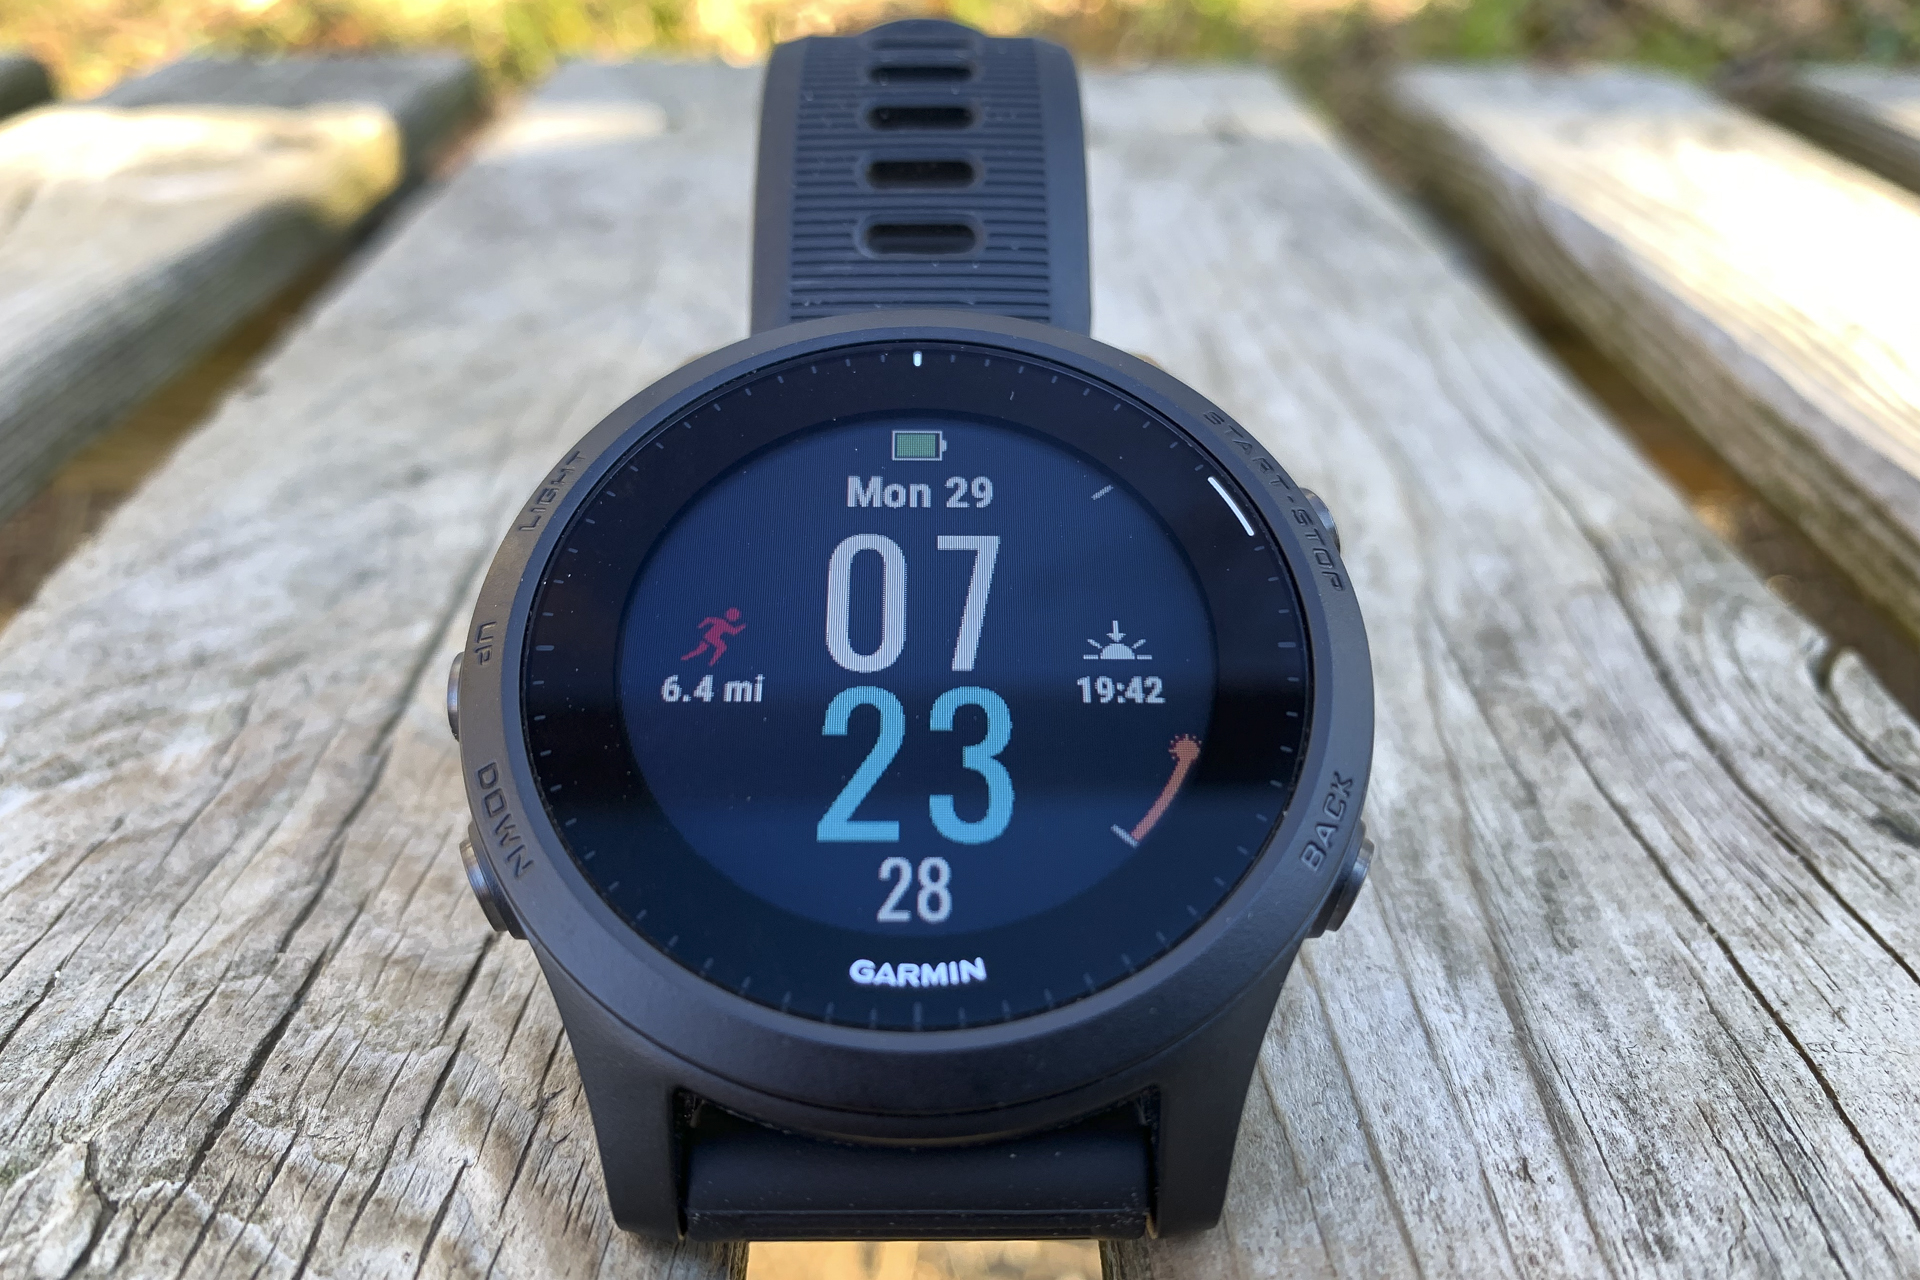 Garmin Forerunner 945 Review: A Full-Featured GPS Smartwatch